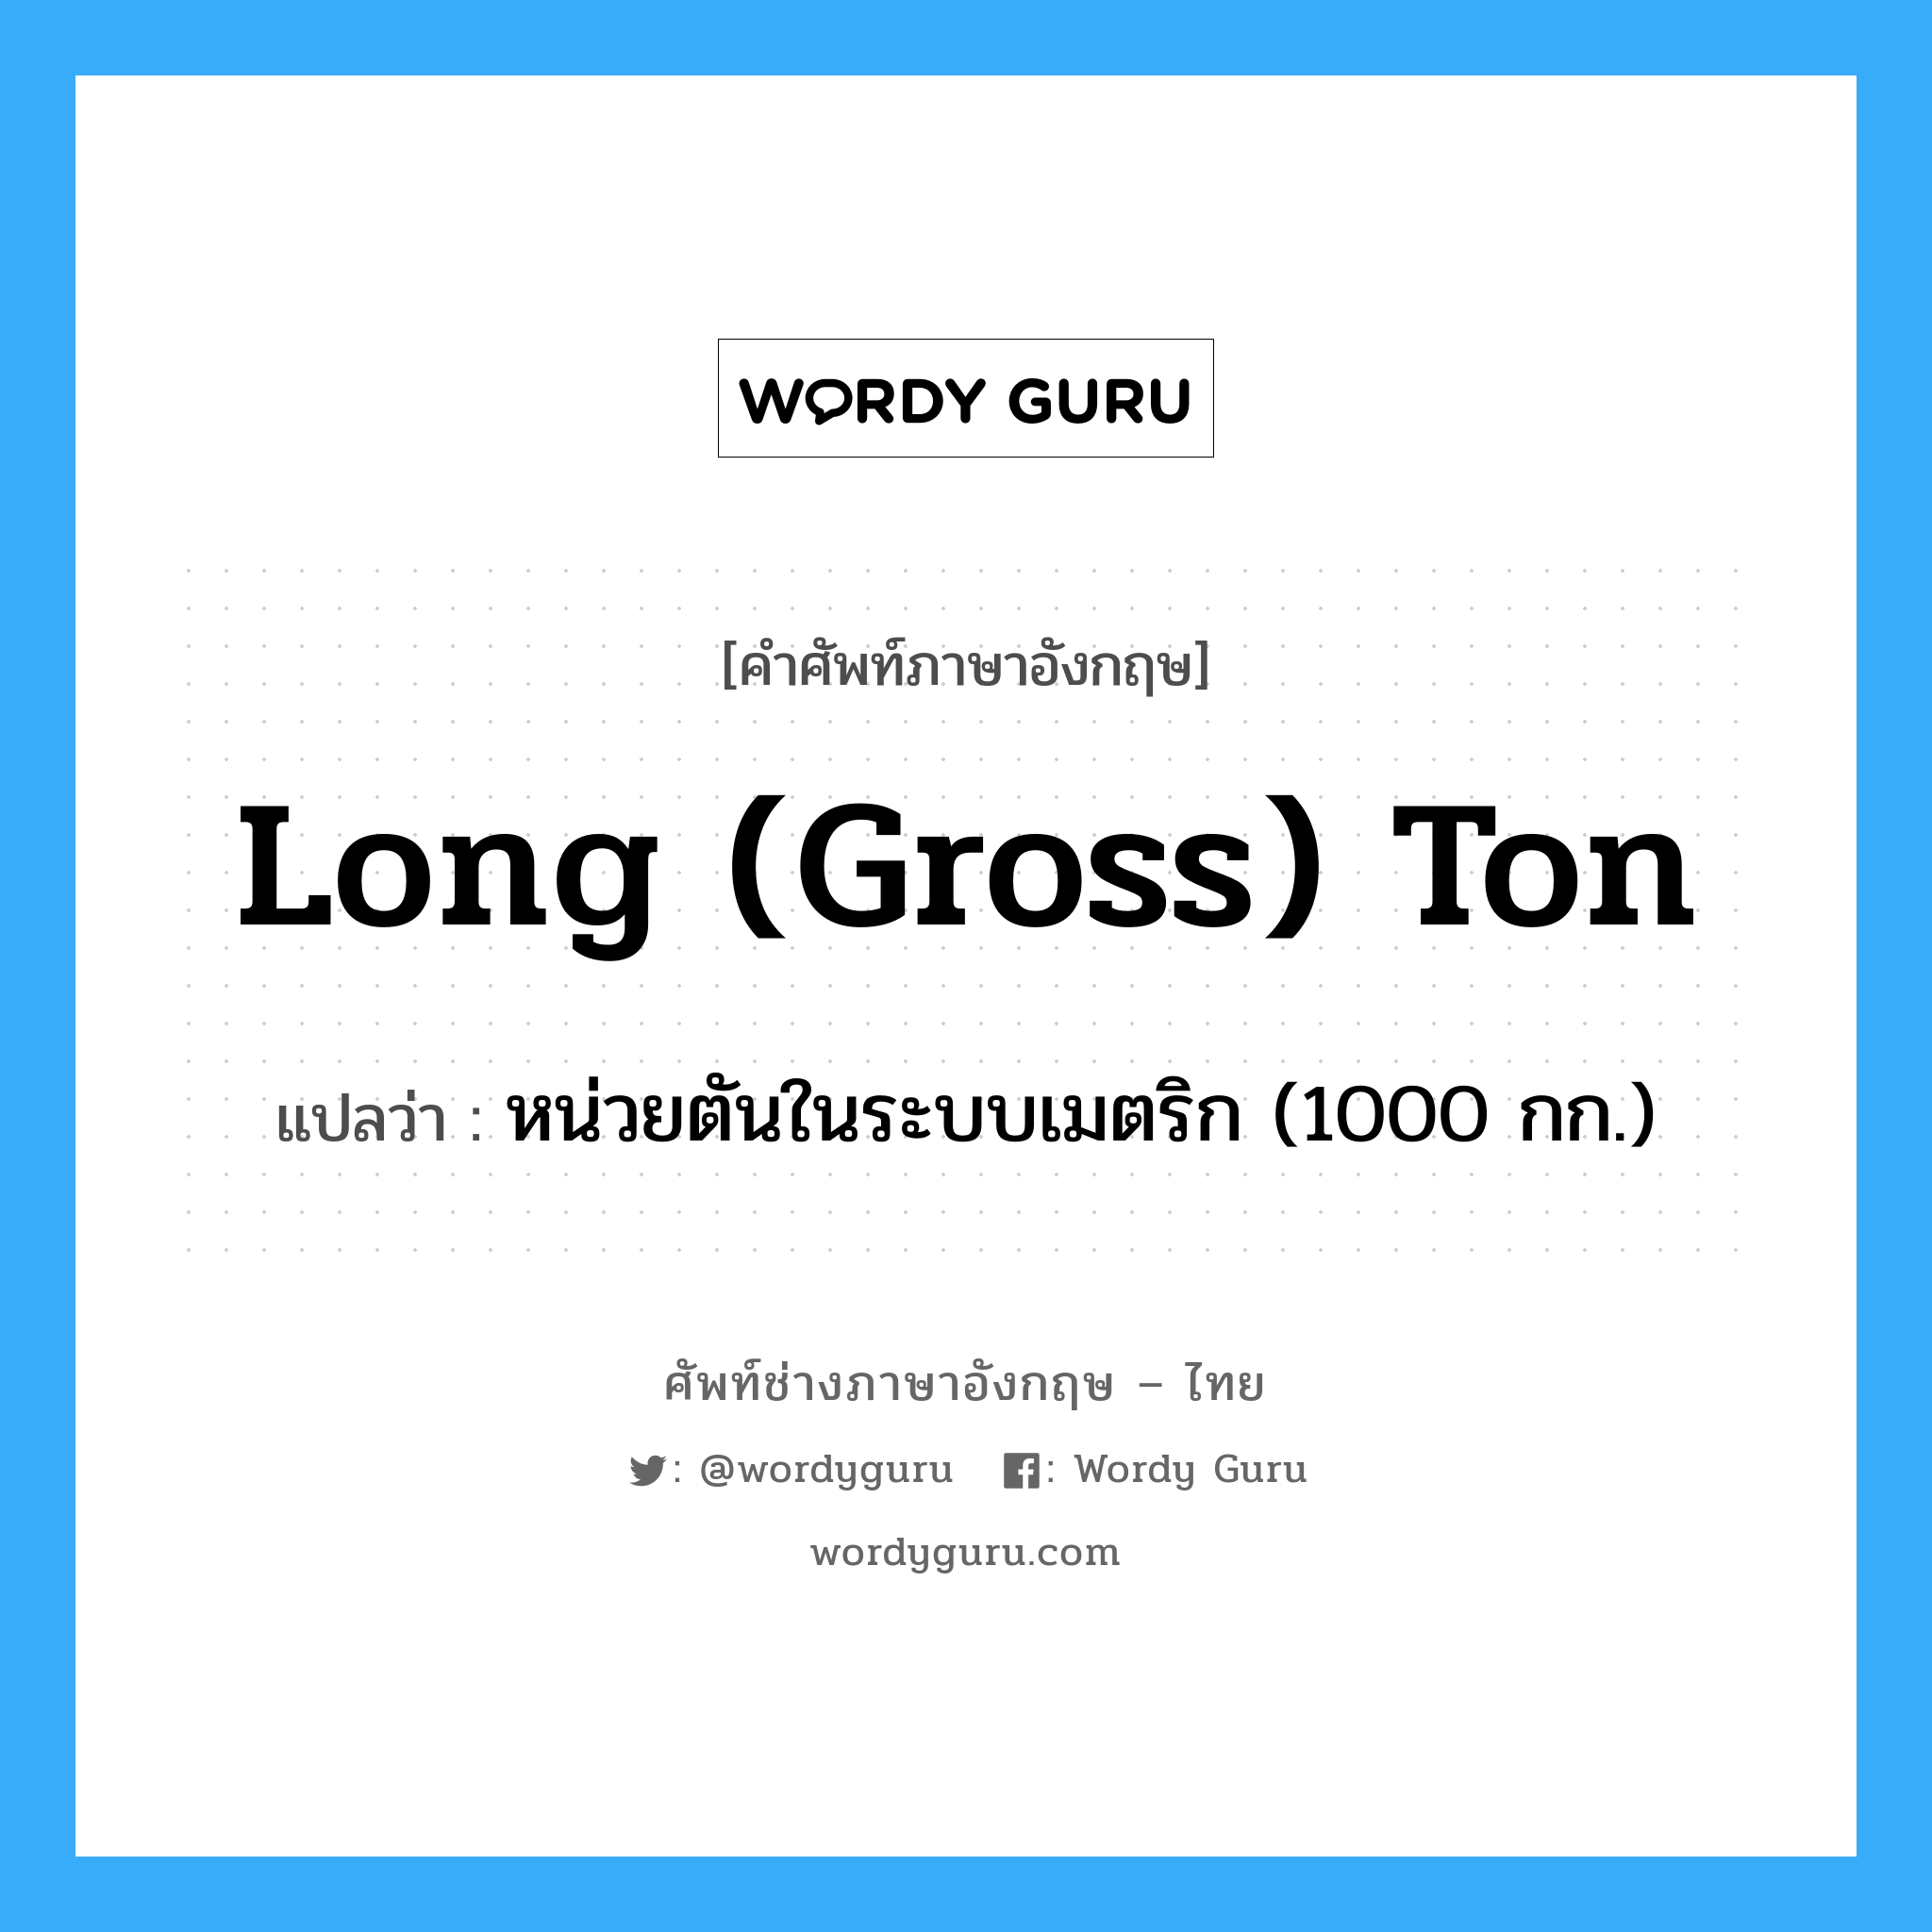 long (gross) ton แปลว่า?, คำศัพท์ช่างภาษาอังกฤษ - ไทย long (gross) ton คำศัพท์ภาษาอังกฤษ long (gross) ton แปลว่า หน่วยตันในระบบเมตริก (1000 กก.)